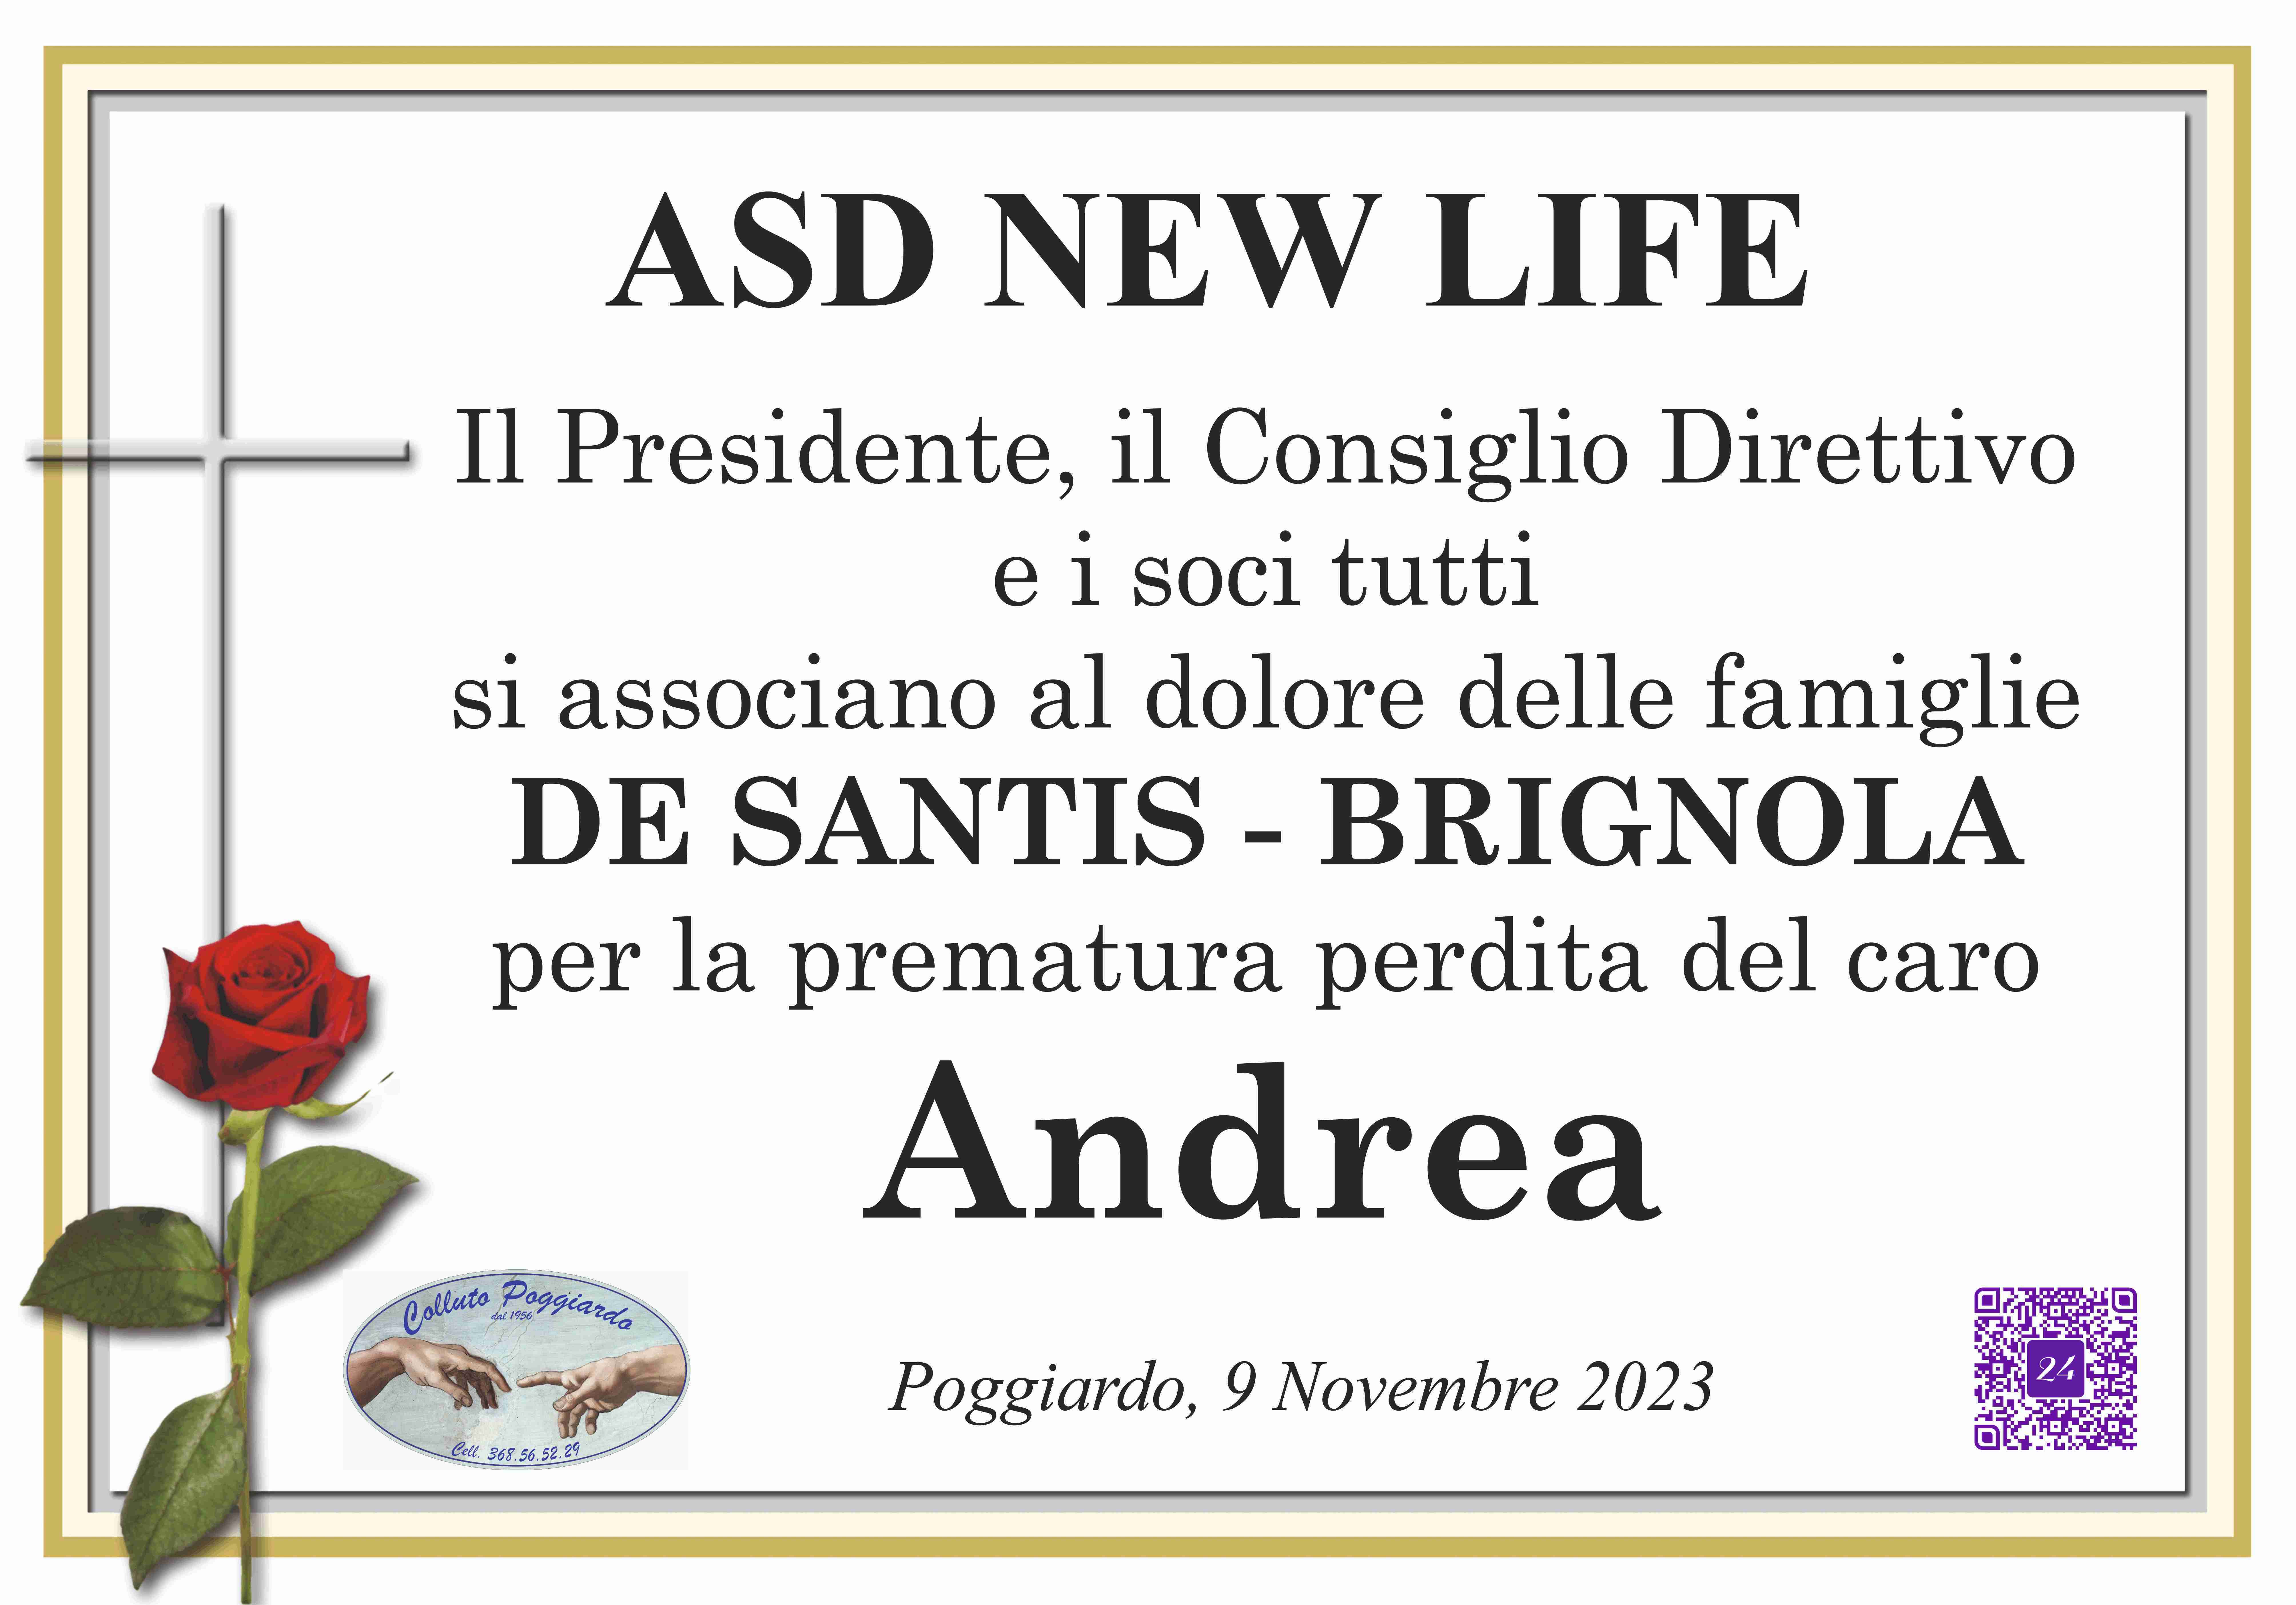 Andrea Brignola